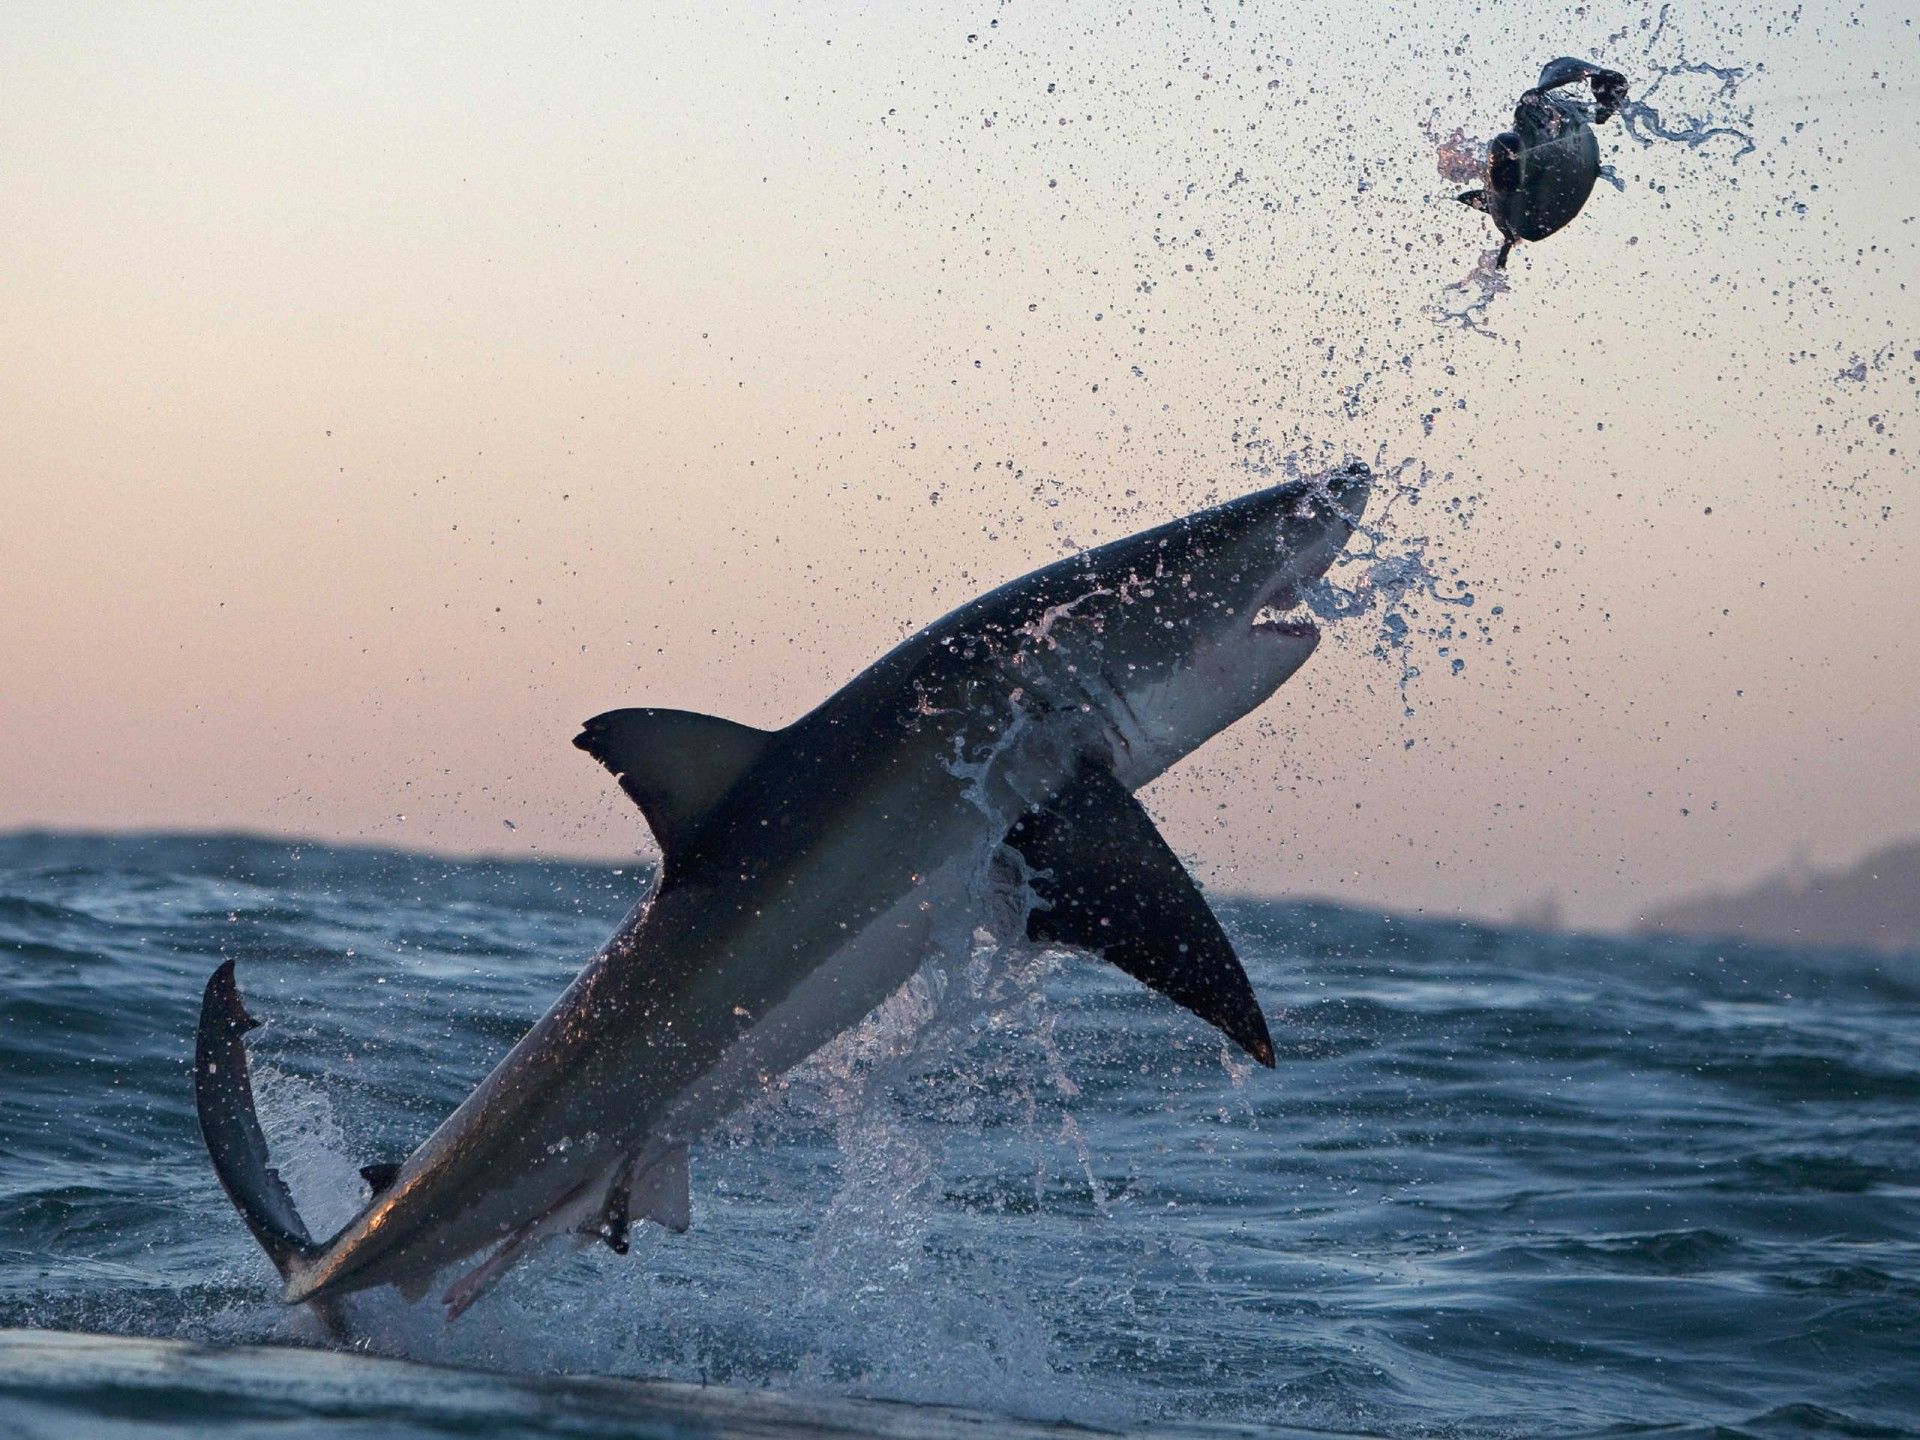 Flying Great White Shark Attack, Wallpaper13.com